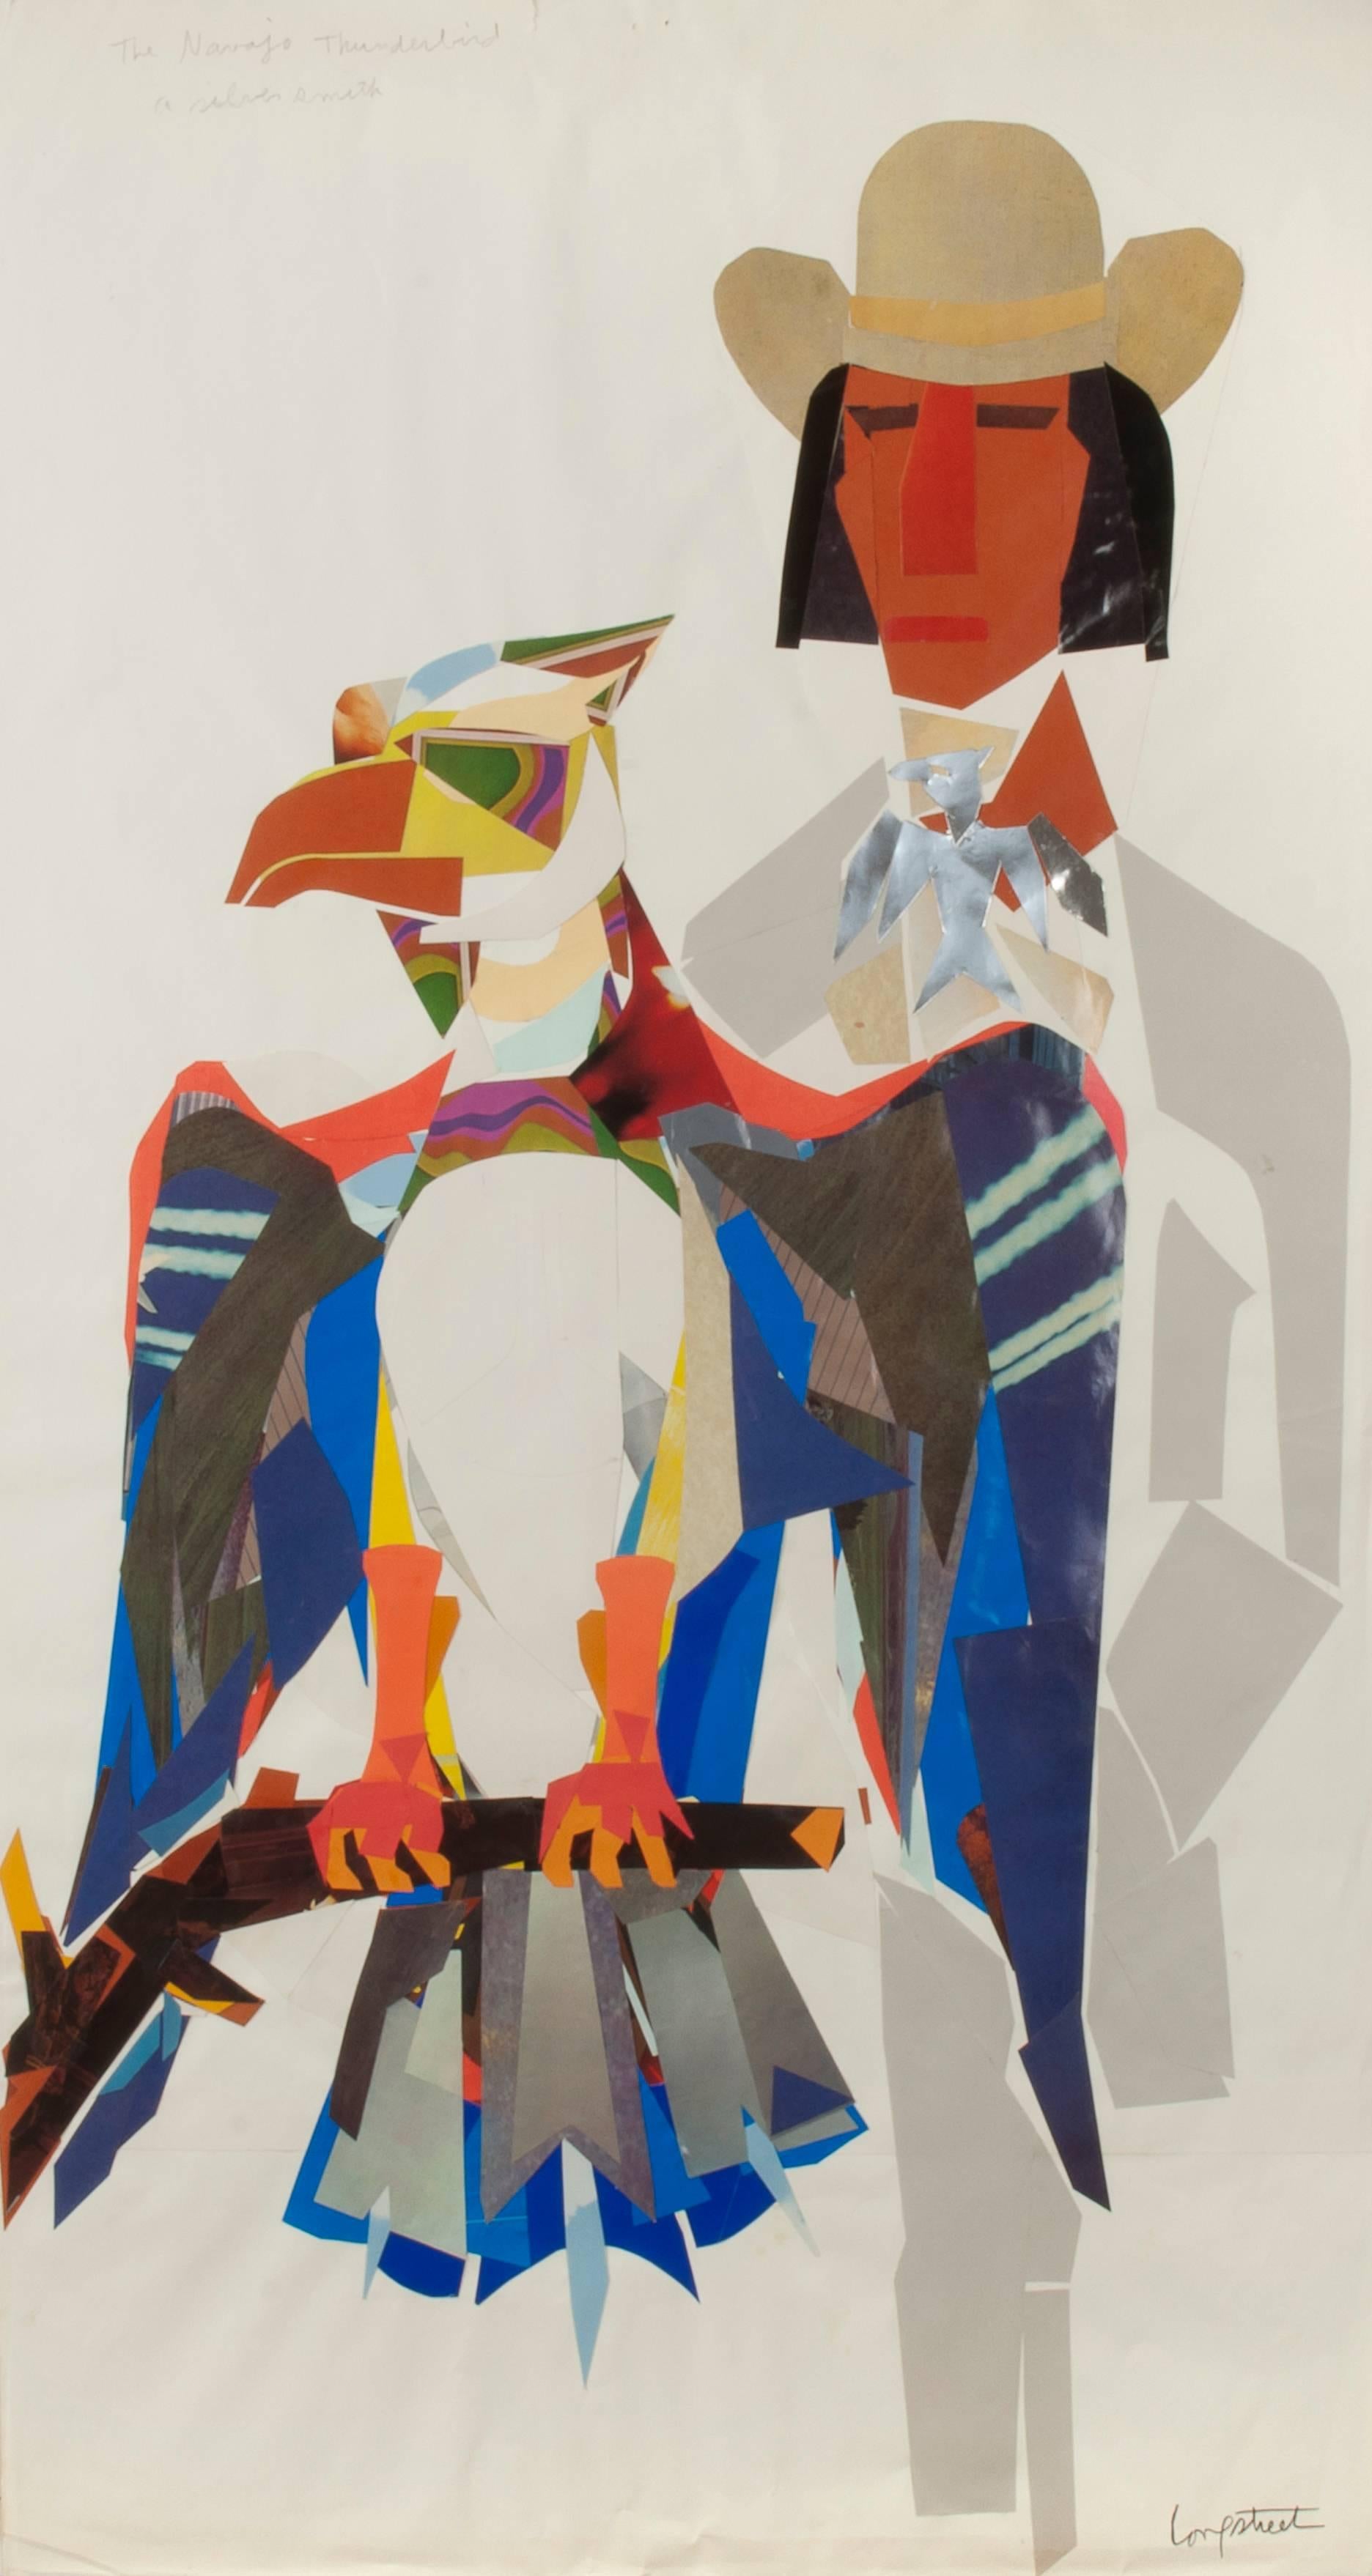 Navajo Thunderbird Silversmith - Mixed Media Art by Stephen Longstreet